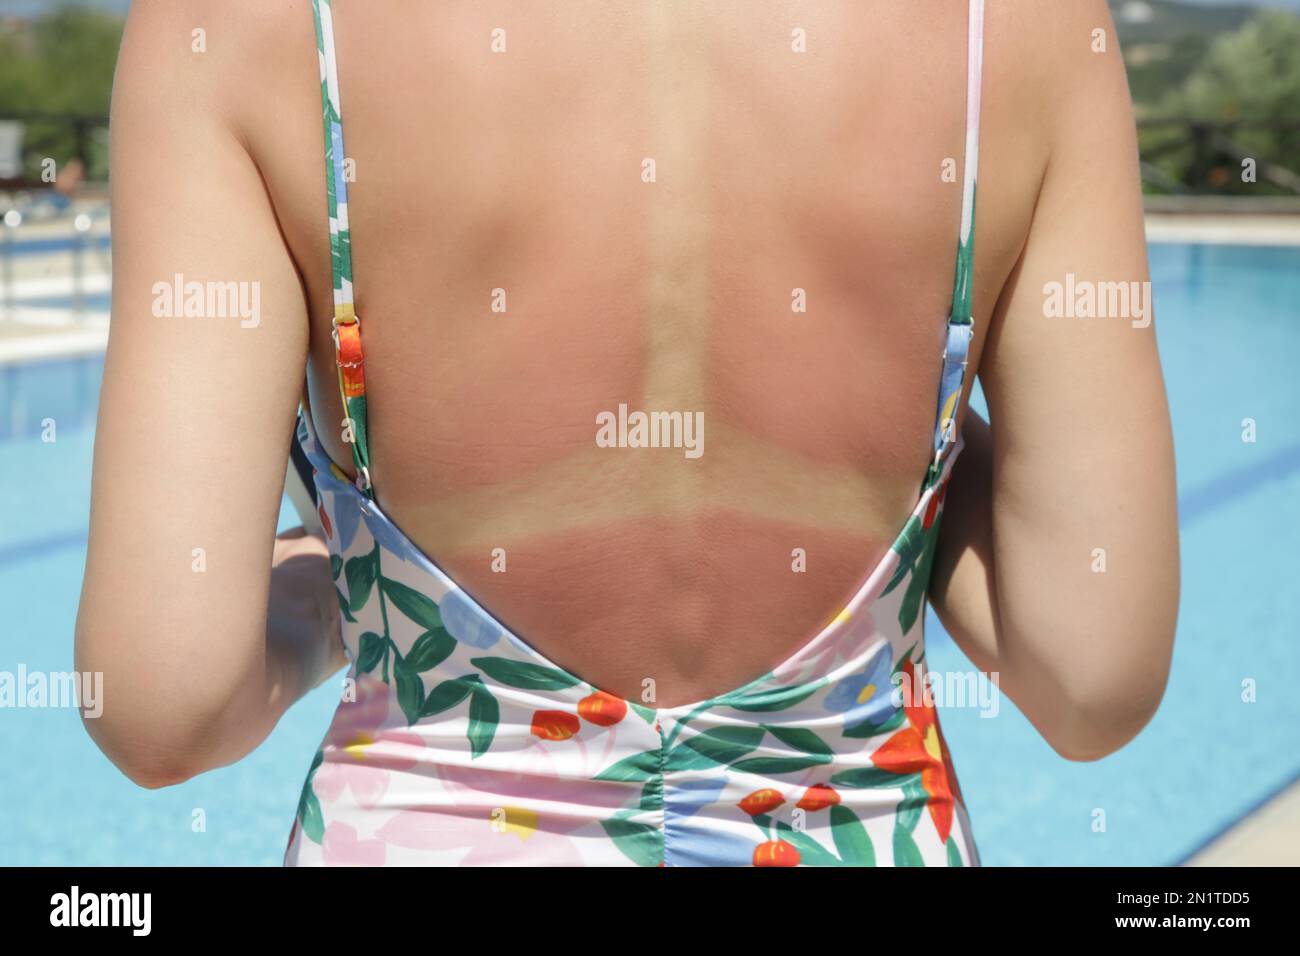 Concetto di scottatura solare e cura della pelle. Giovane donna con pelle rossa incendiata sulla schiena in piscina. Foto Stock